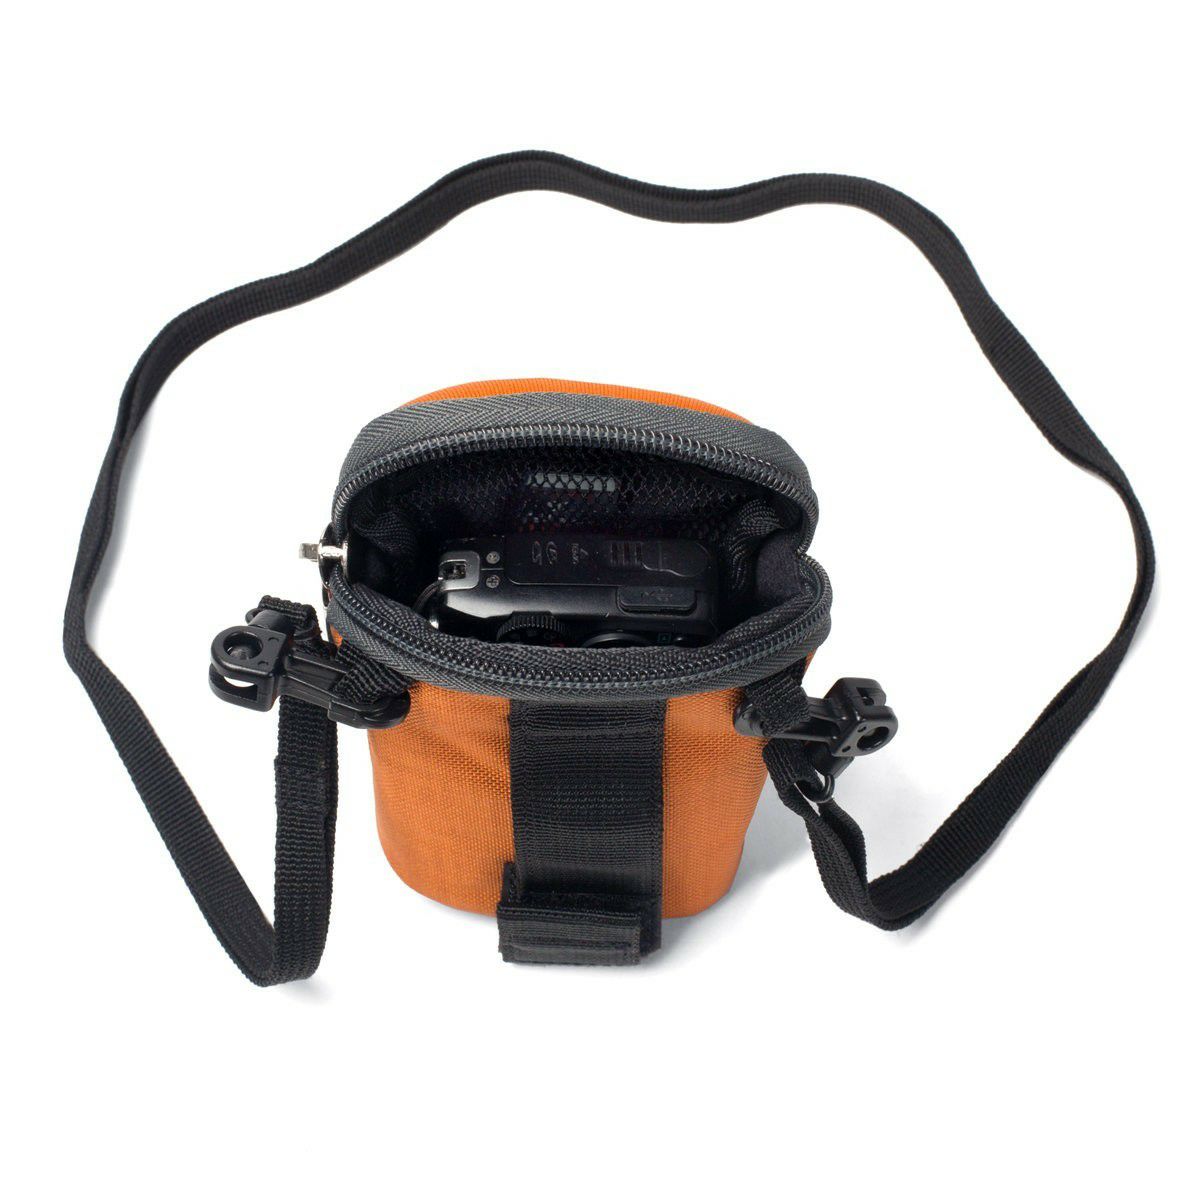 Crumpler Base Layer Camera Pouch S burned orange anthracite (BLCP-S-003) žarko narančasta antracit torba za fotoaparat